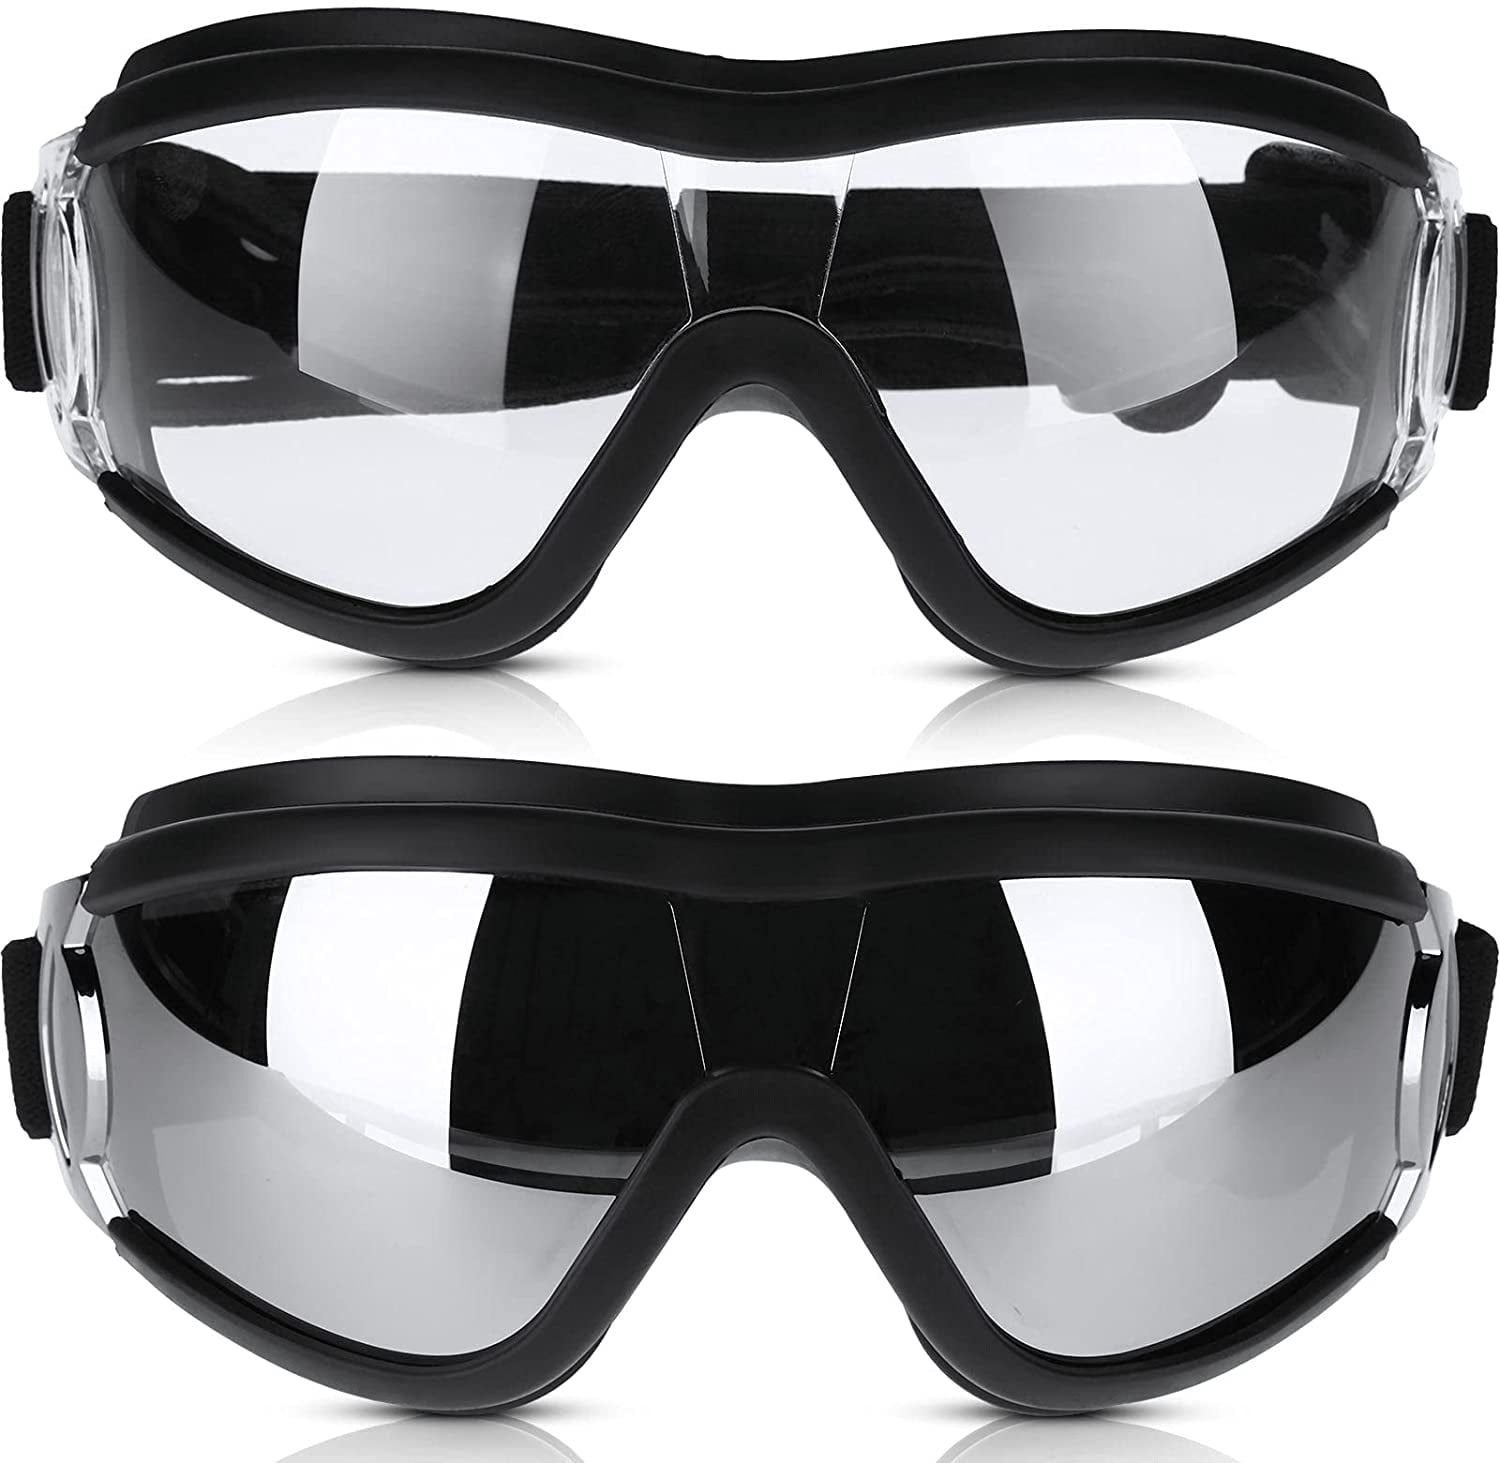 2 Pieces Goggles Straps Swimming Glasses Straps Headband Accessories 7.5'' 